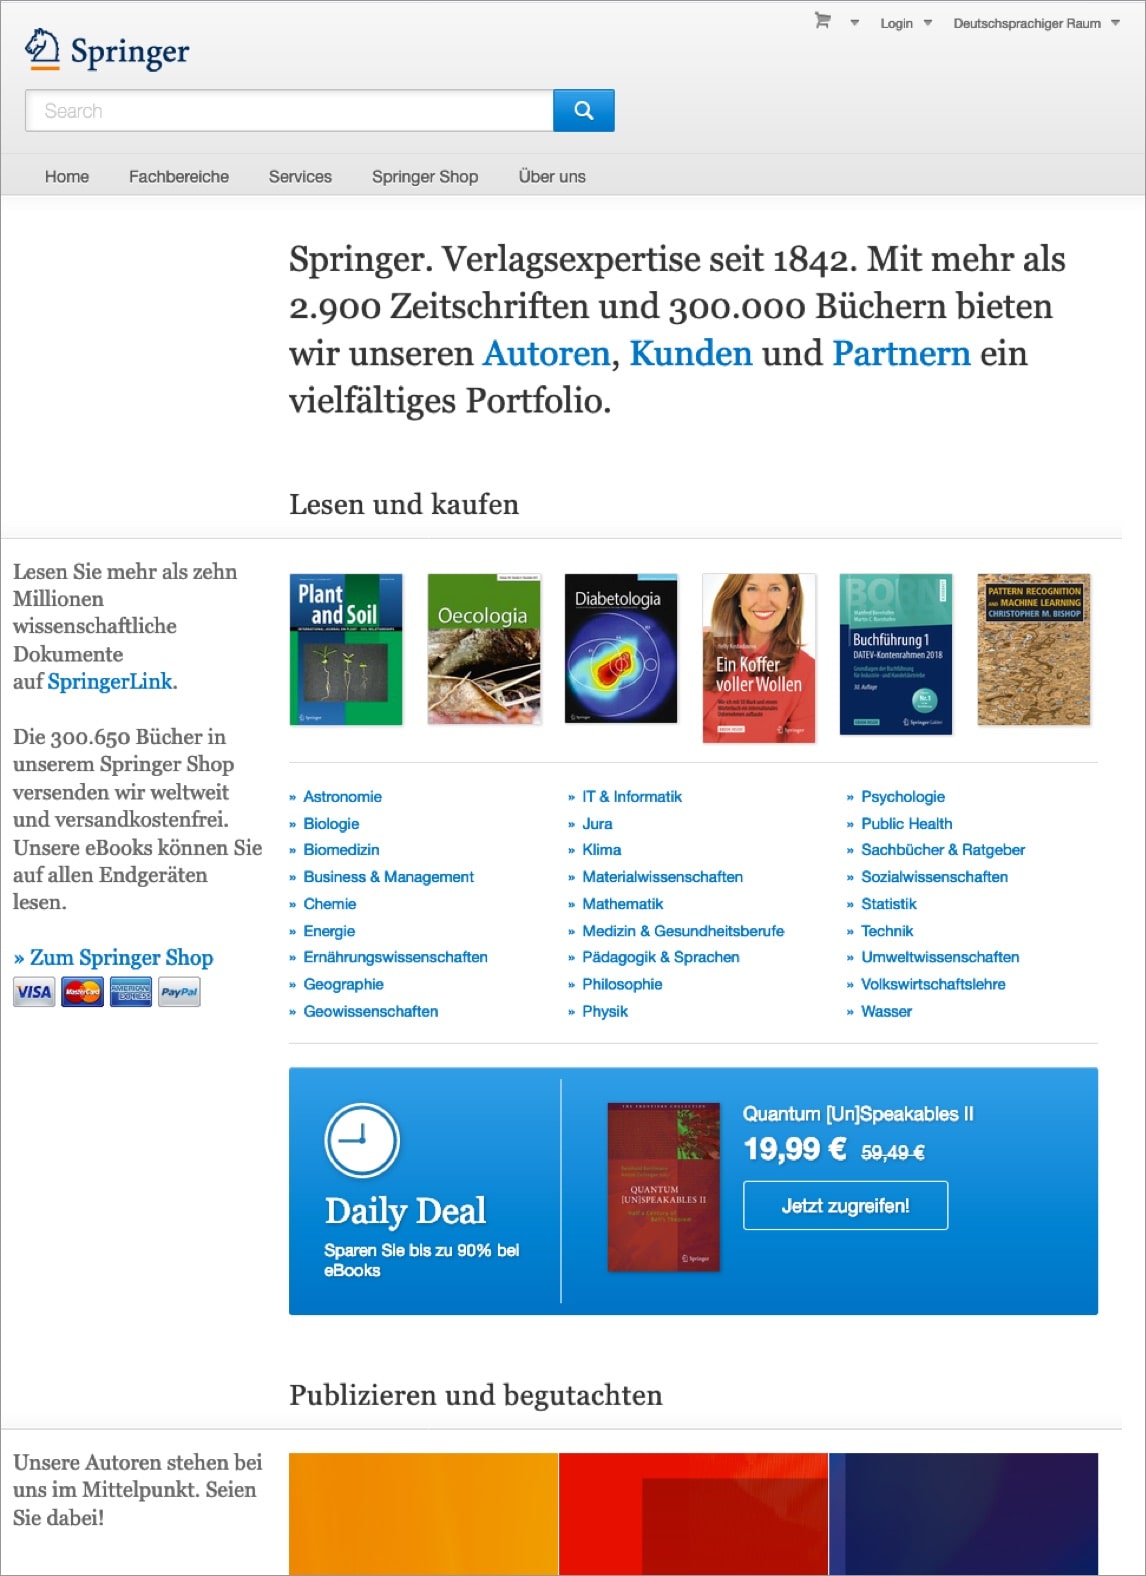 Springer Verlag – Webdesign